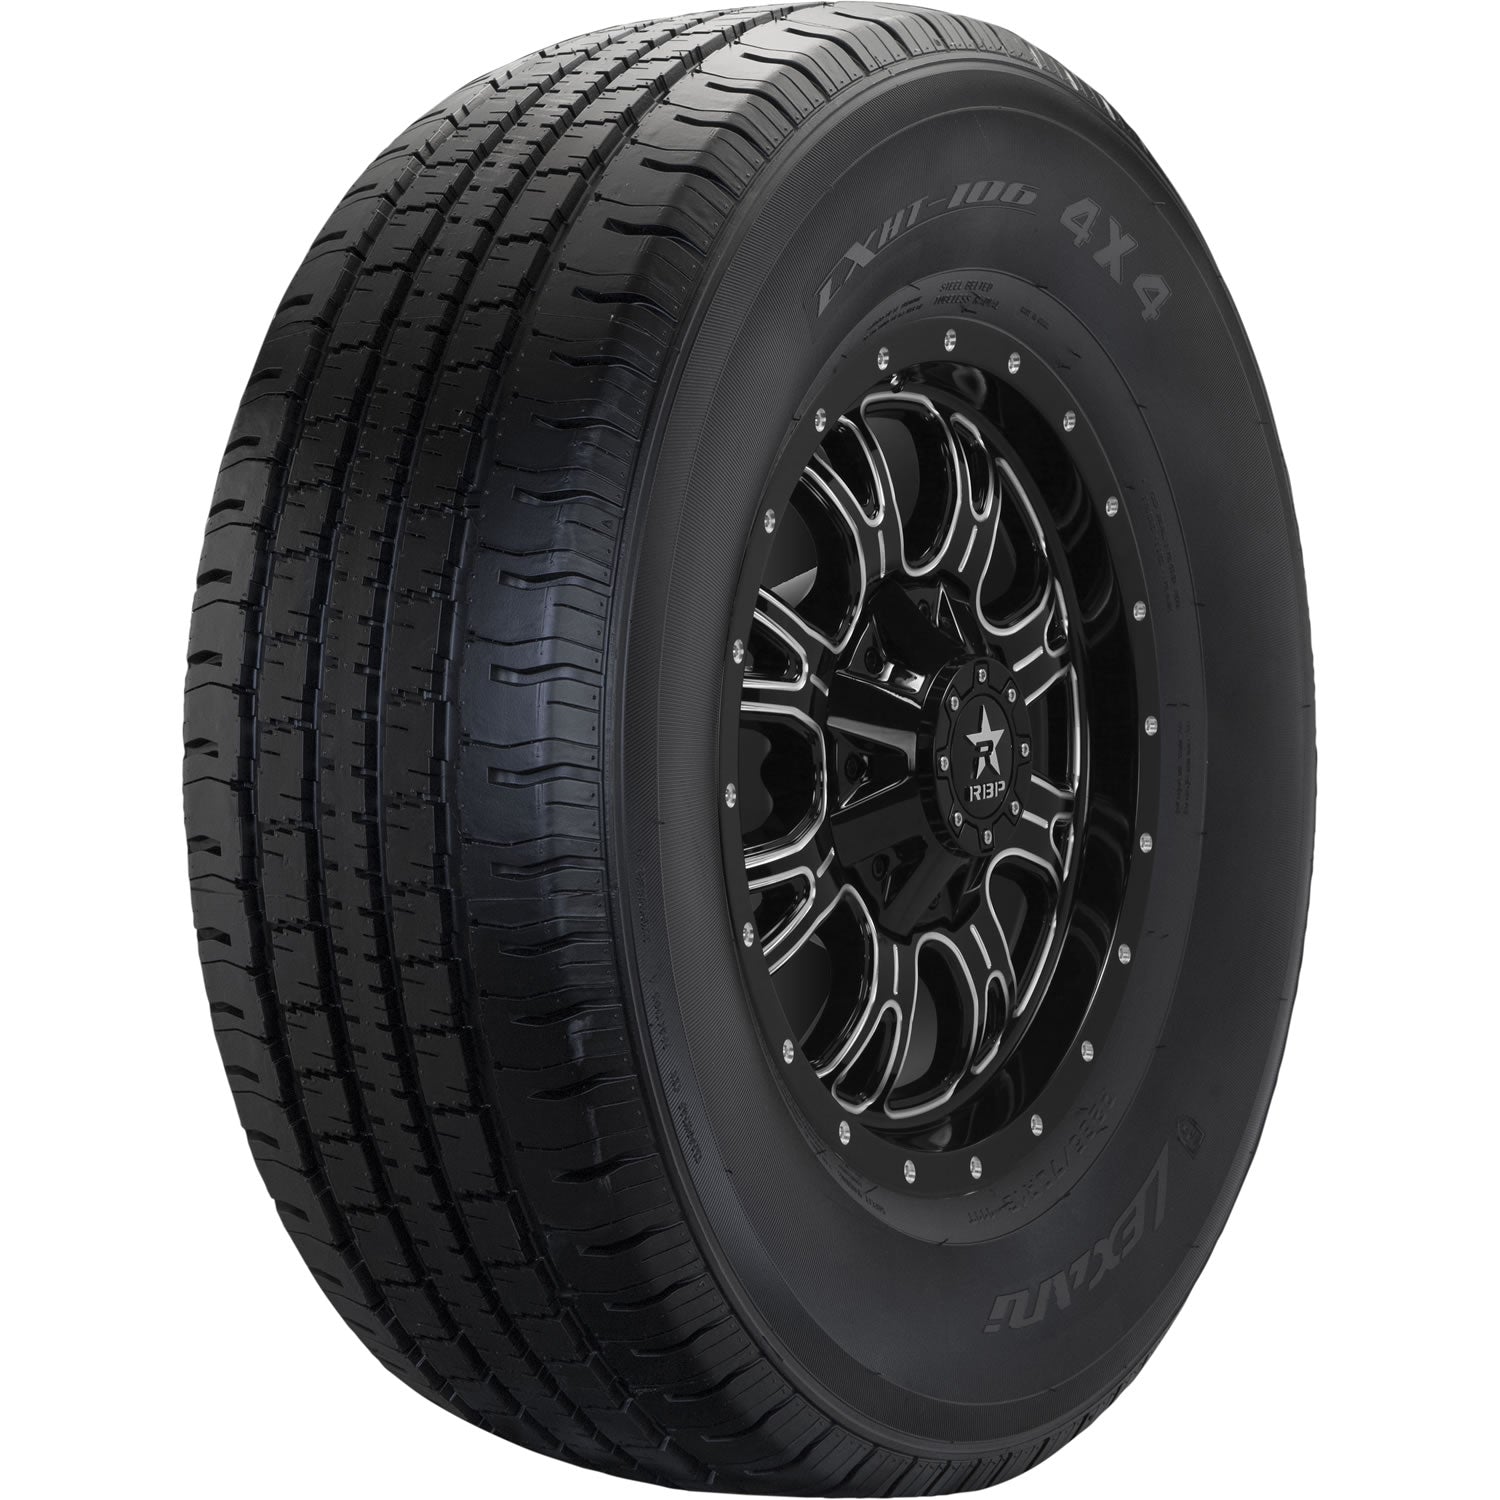 LEXANI LXHT-106 P255/65R16 (29.1X10.2R 16) Tires